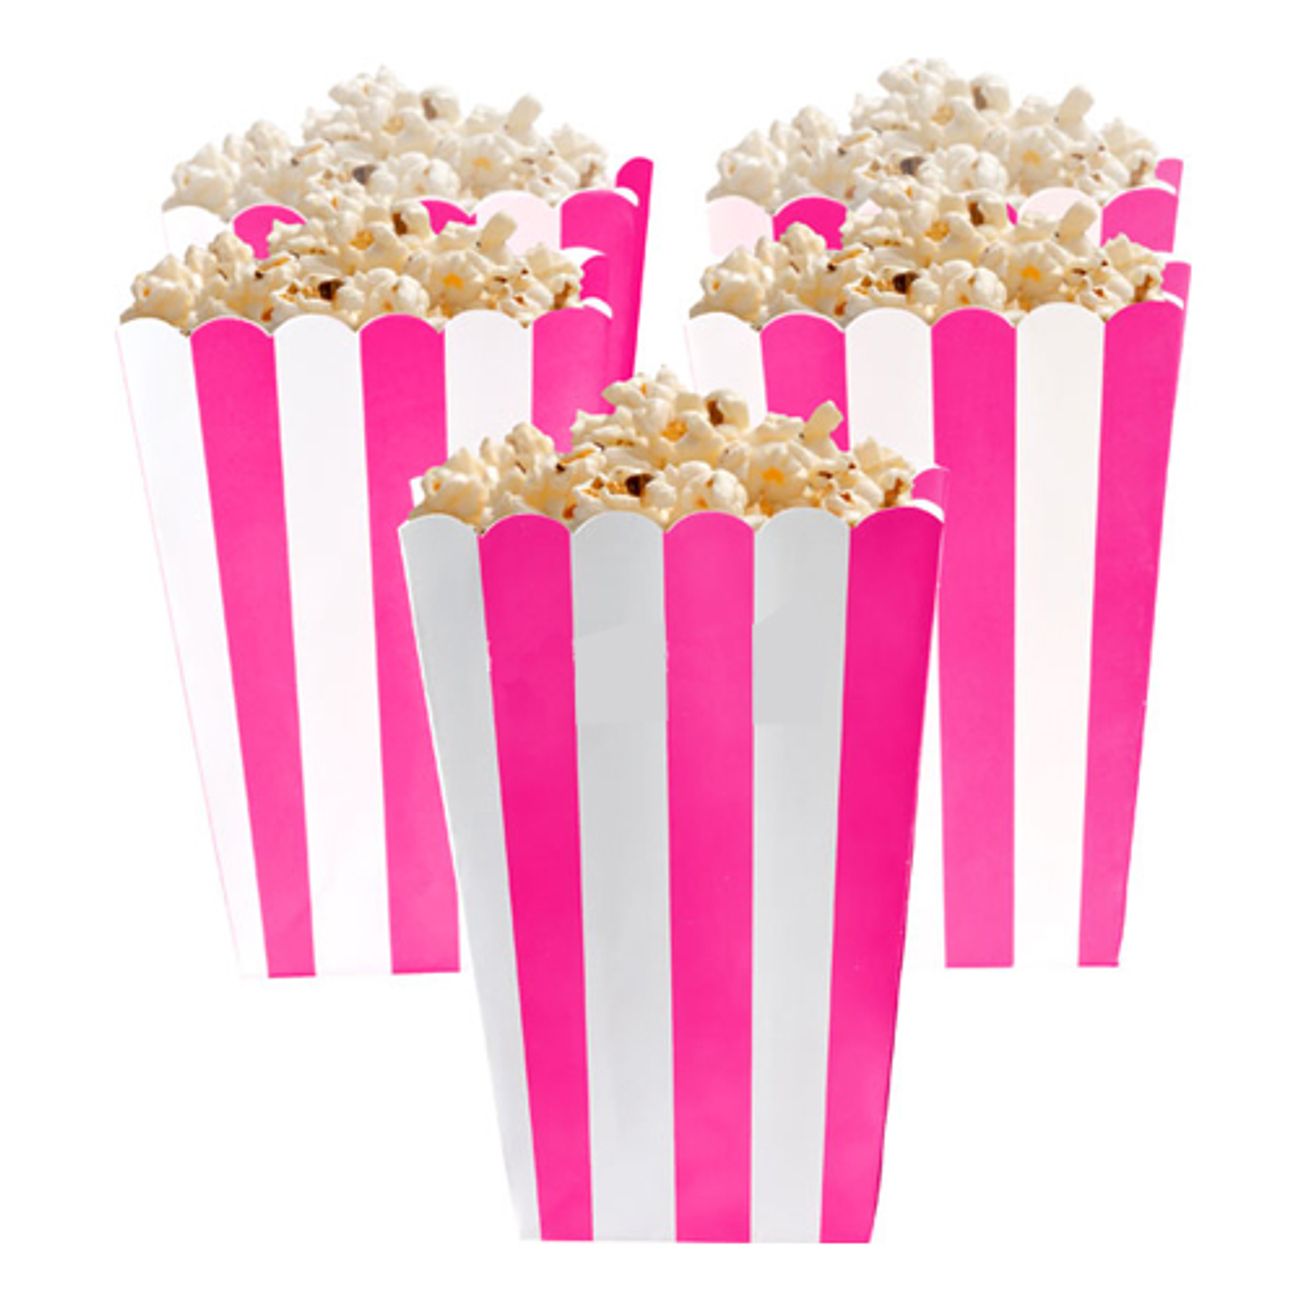 popcornbagare-bla-1